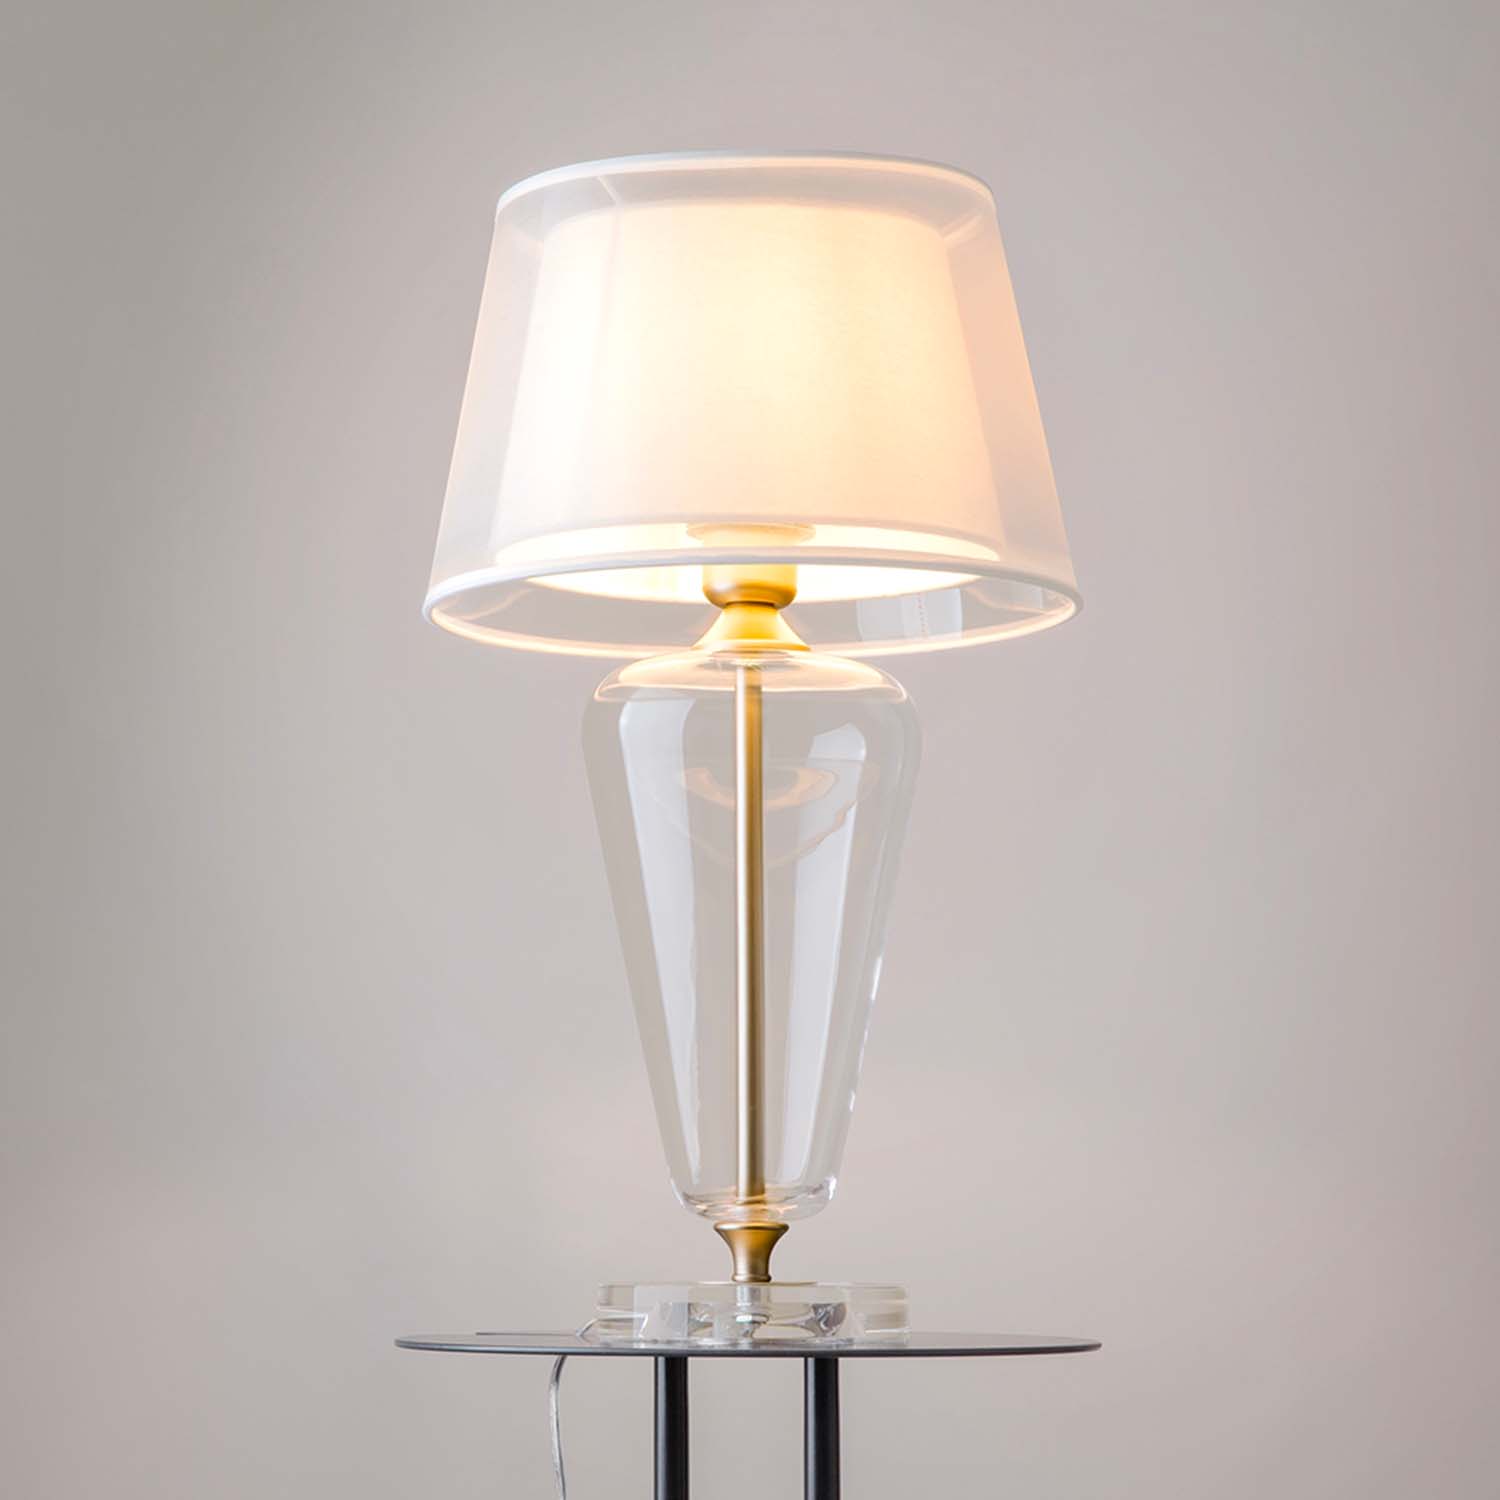 TABLE VERRE - Lampe à poser en verre vintage, abat-jour en tissu